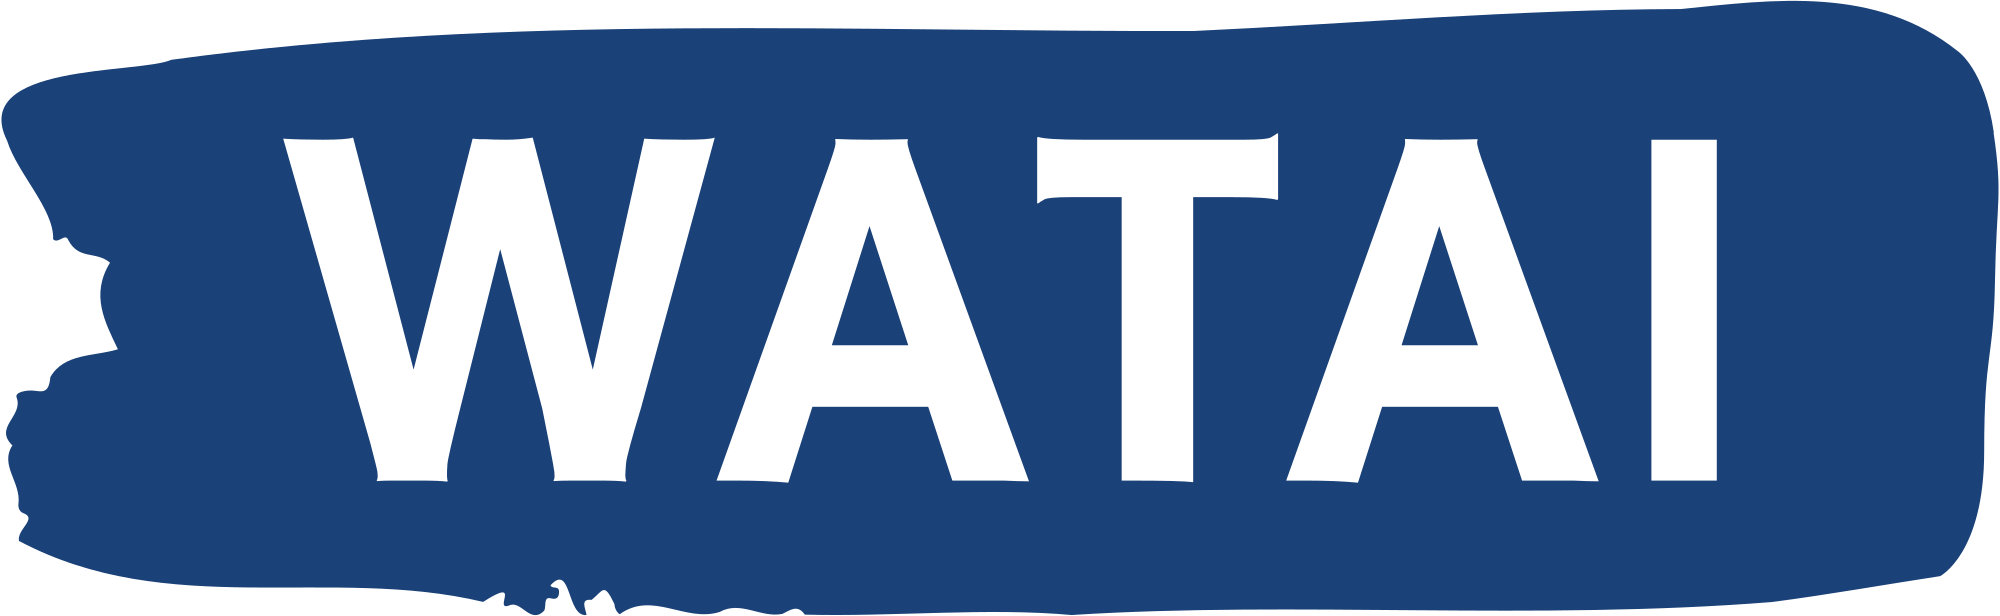 WATA1